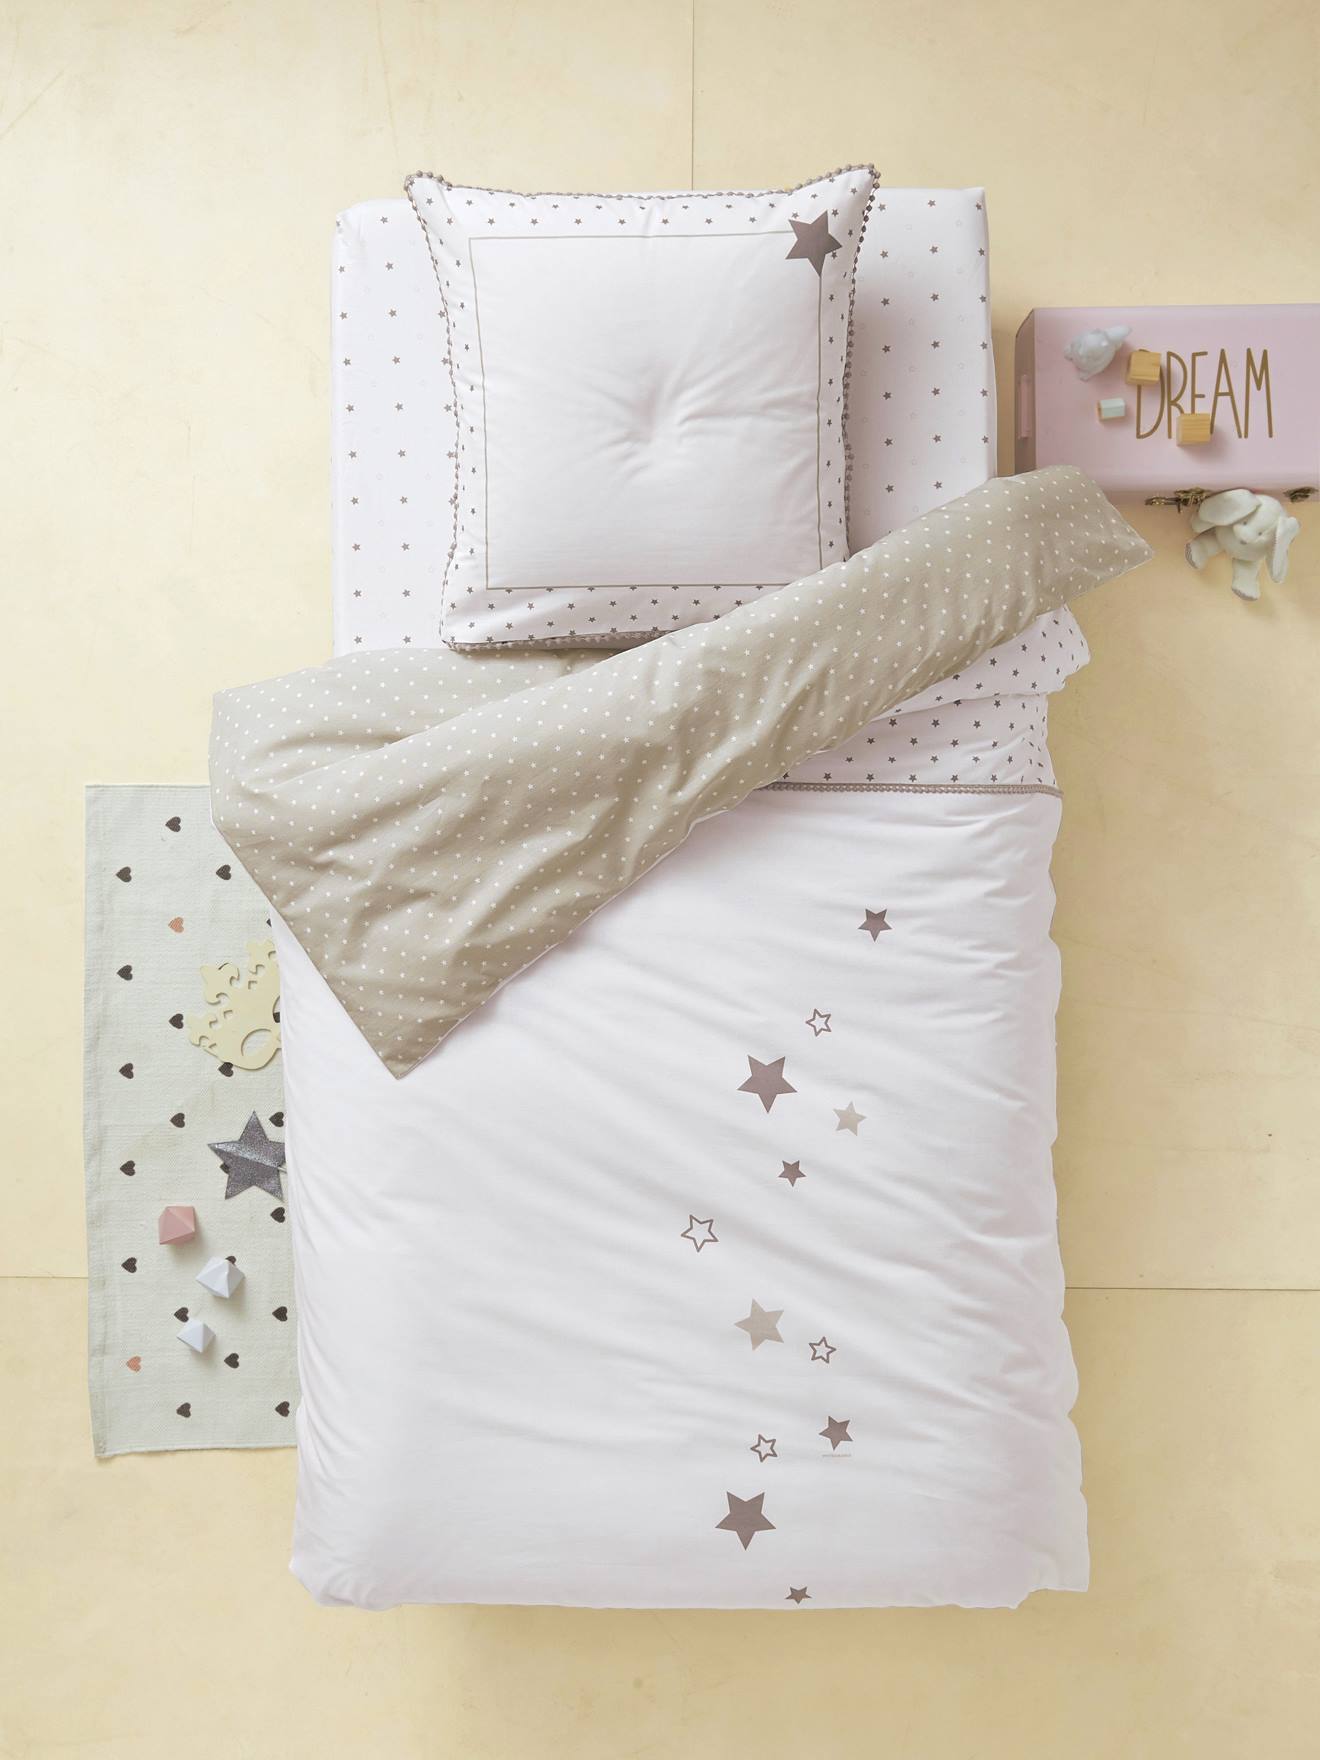 Duvet Cover Pillowcase Set Star Shower Theme Printed White